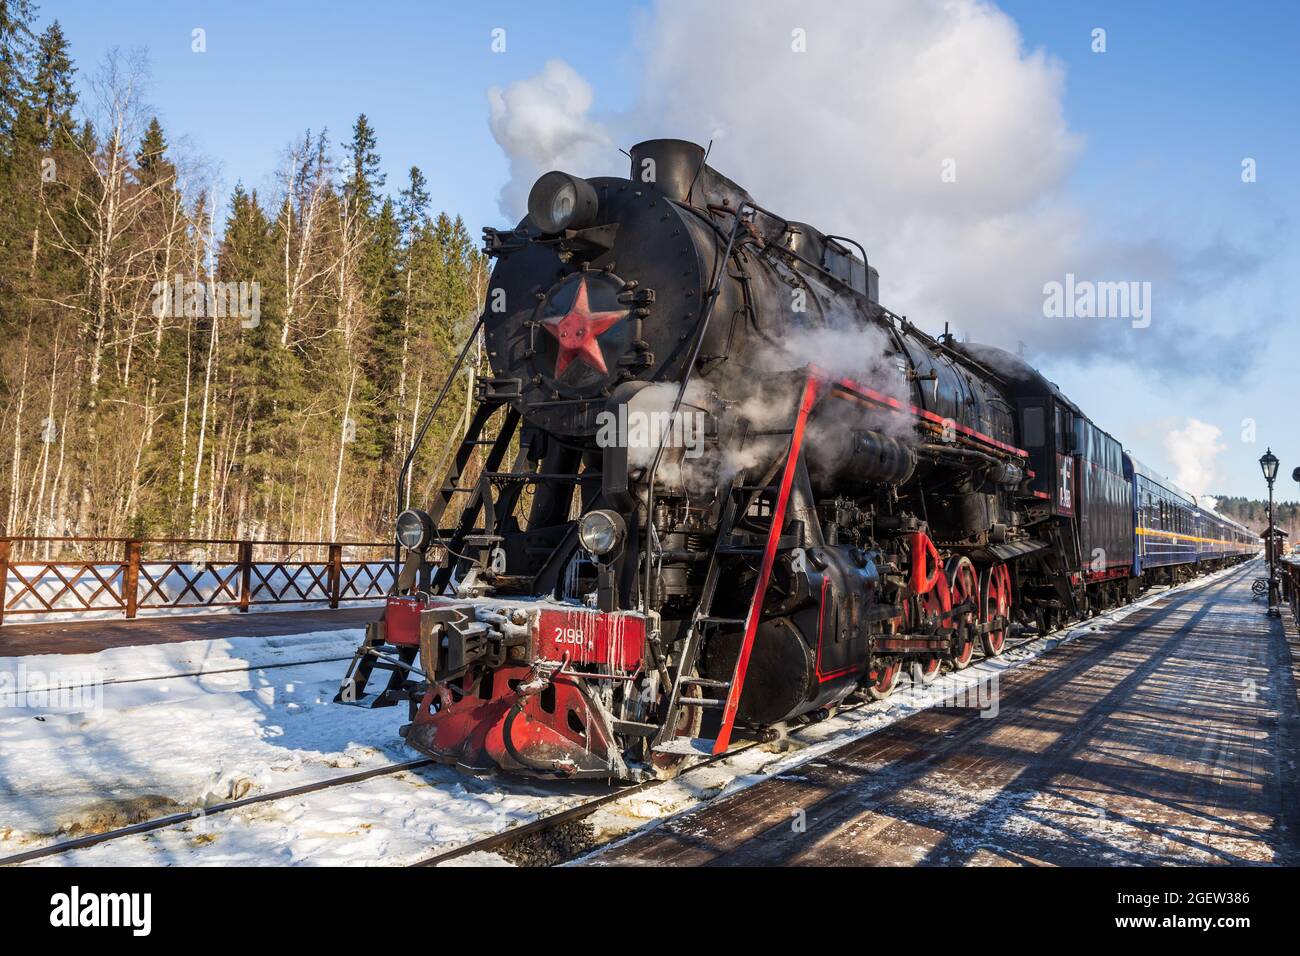 RUSKEALA, RUSSIA - 10 MARZO 2021: Il treno turistico retrò Ruskeala Express con locomotiva a vapore parte dalla stazione ferroviaria Ruskeala Foto Stock